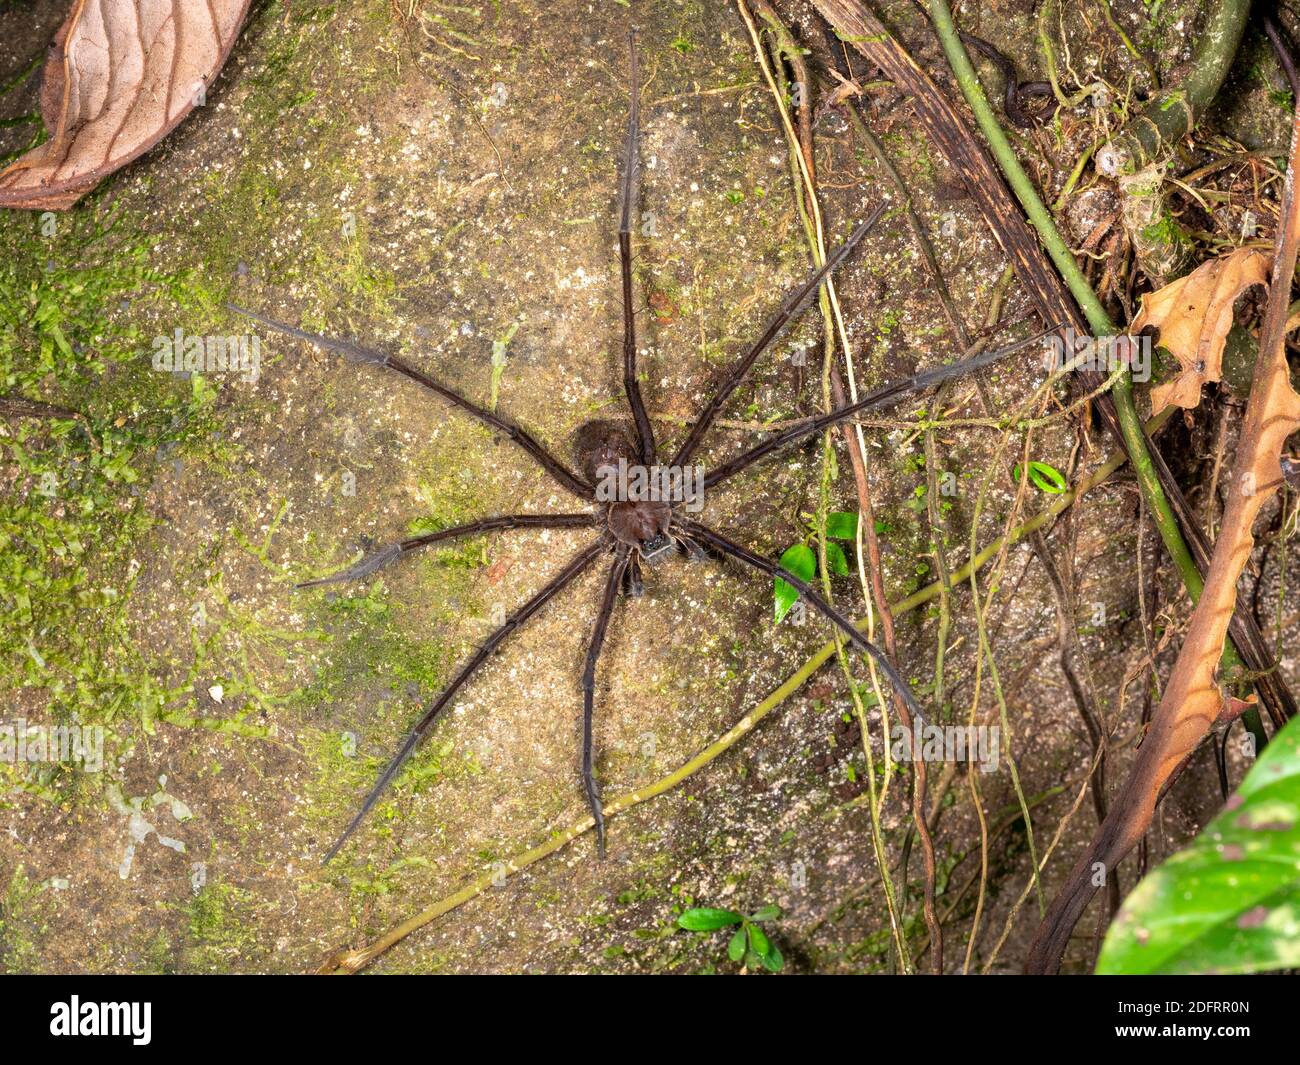 Trechaleid Spider (género Trechalea) En una roca cerca de una corriente de selva tropical cerca de Puerto Quito En el oeste de Ecuador Foto de stock